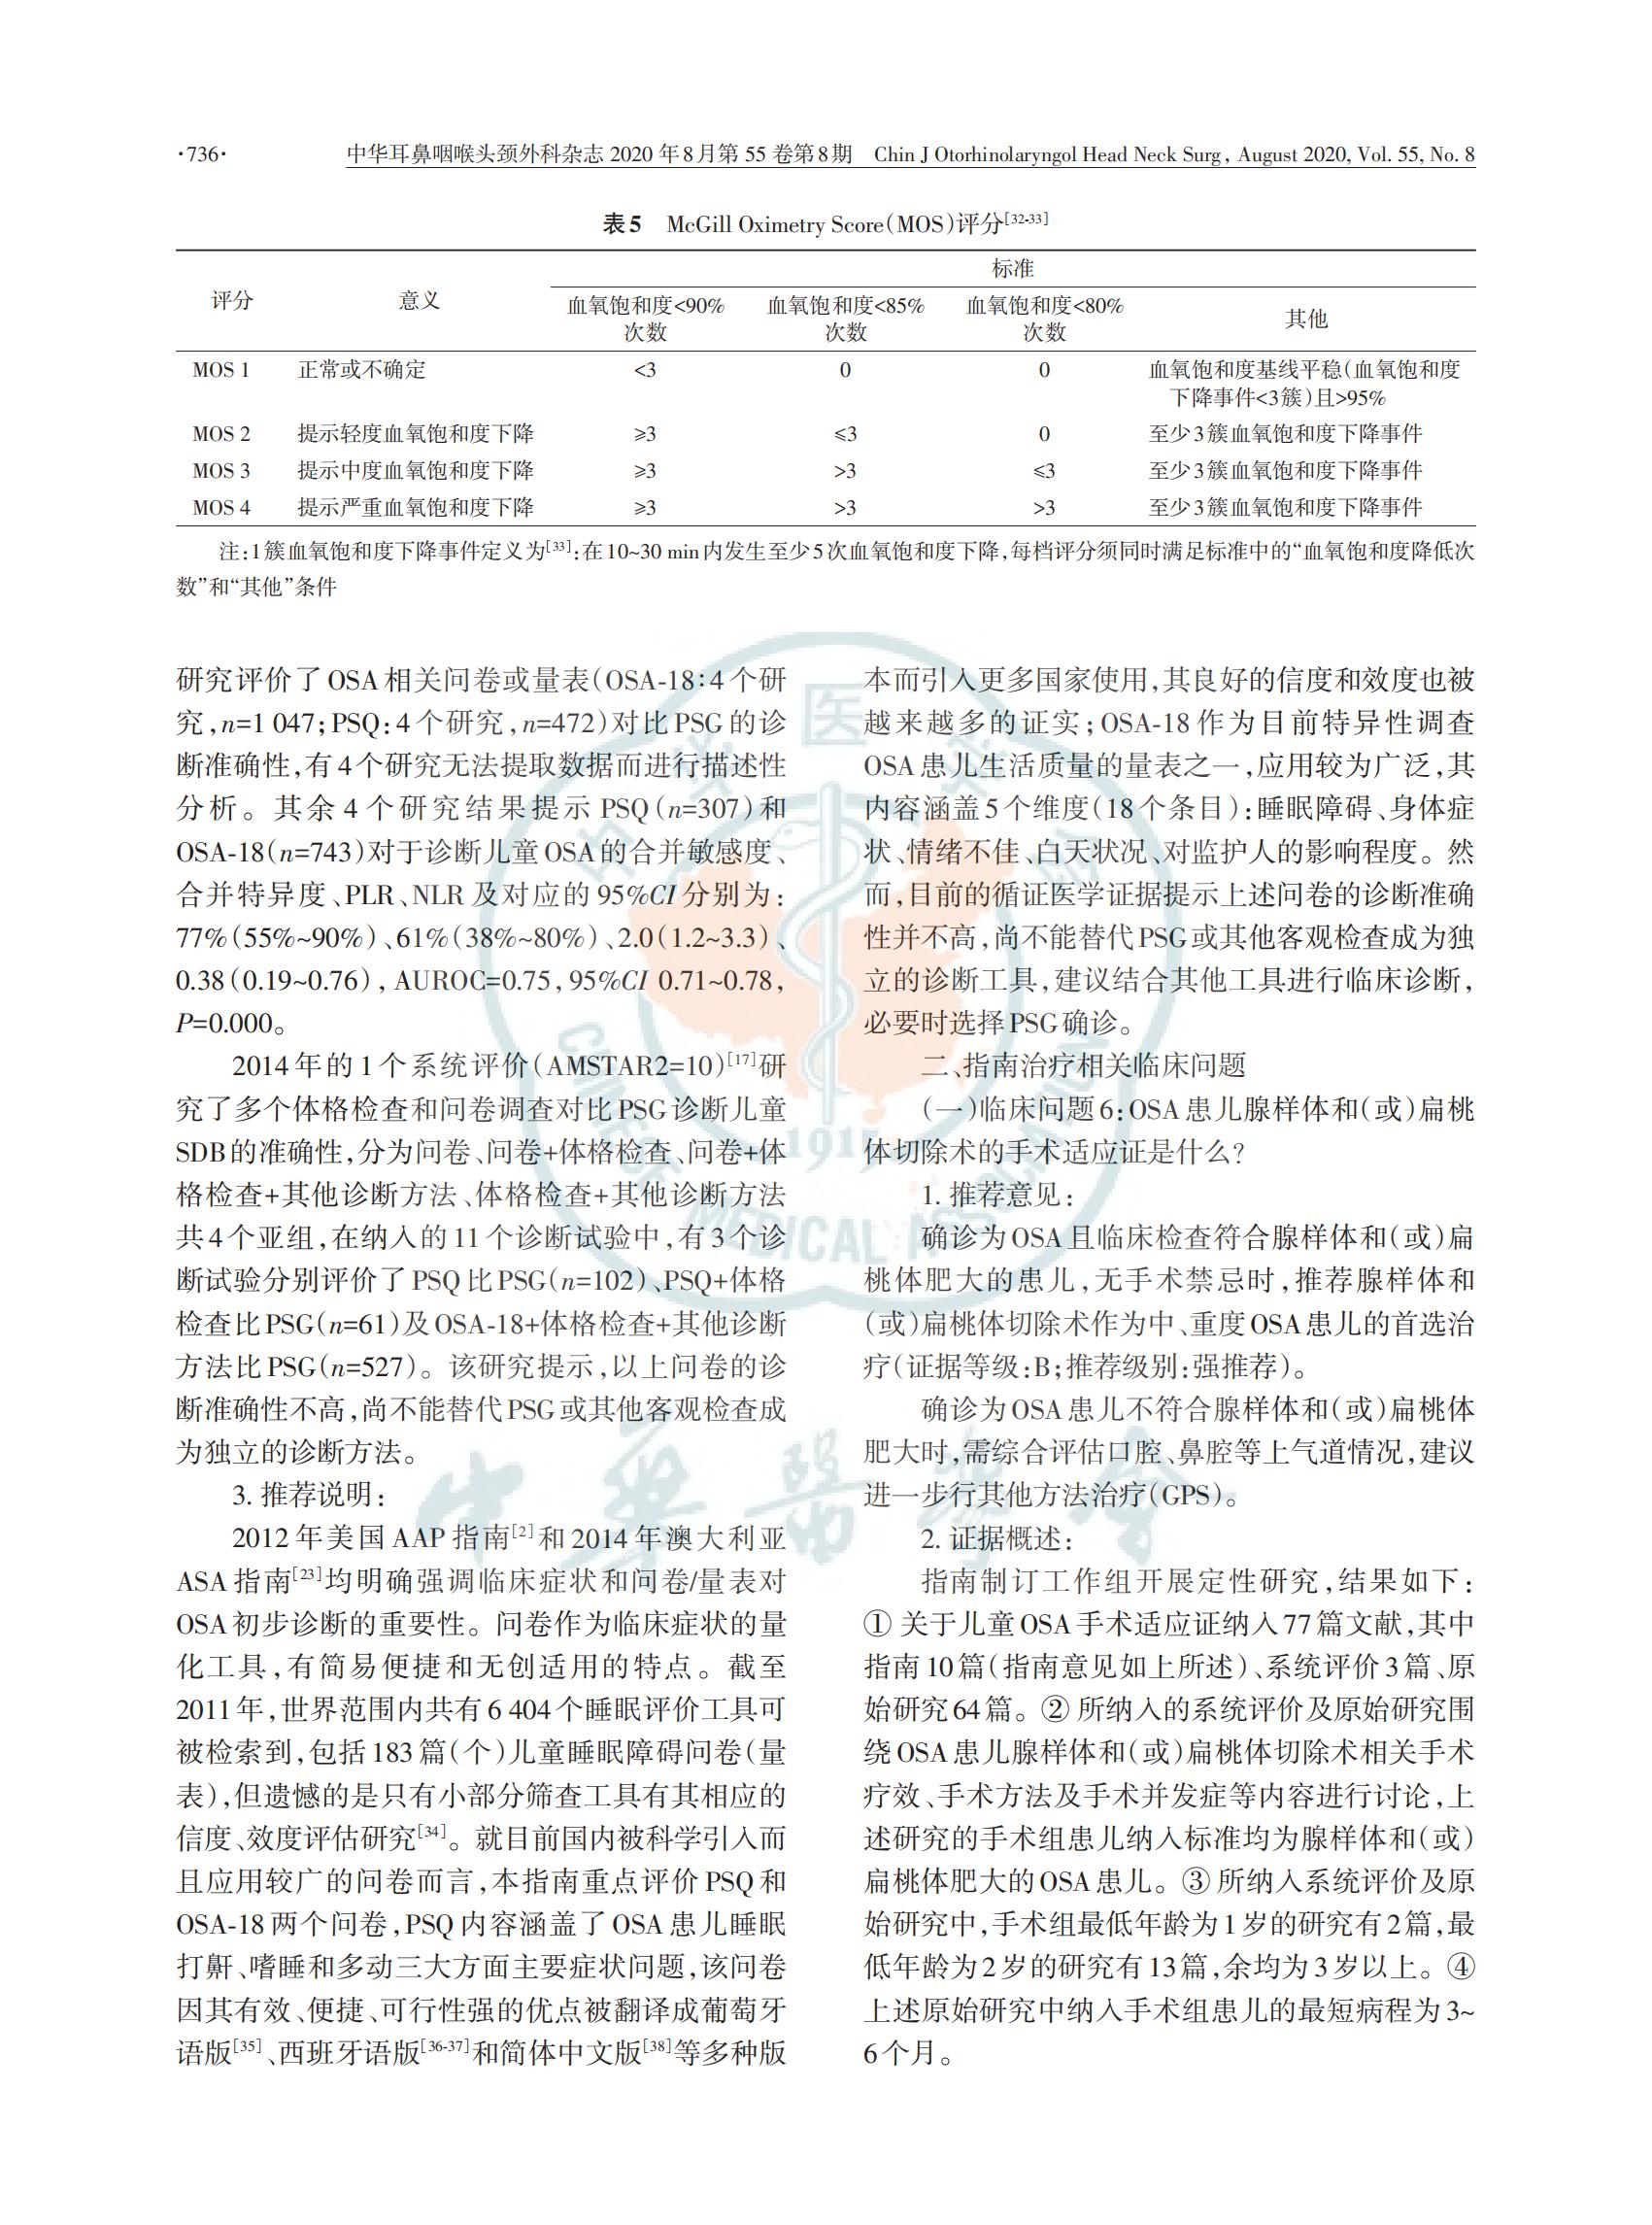 中国儿童阻塞性睡眠呼吸暂停诊断与治疗 指南（2020）(图8)